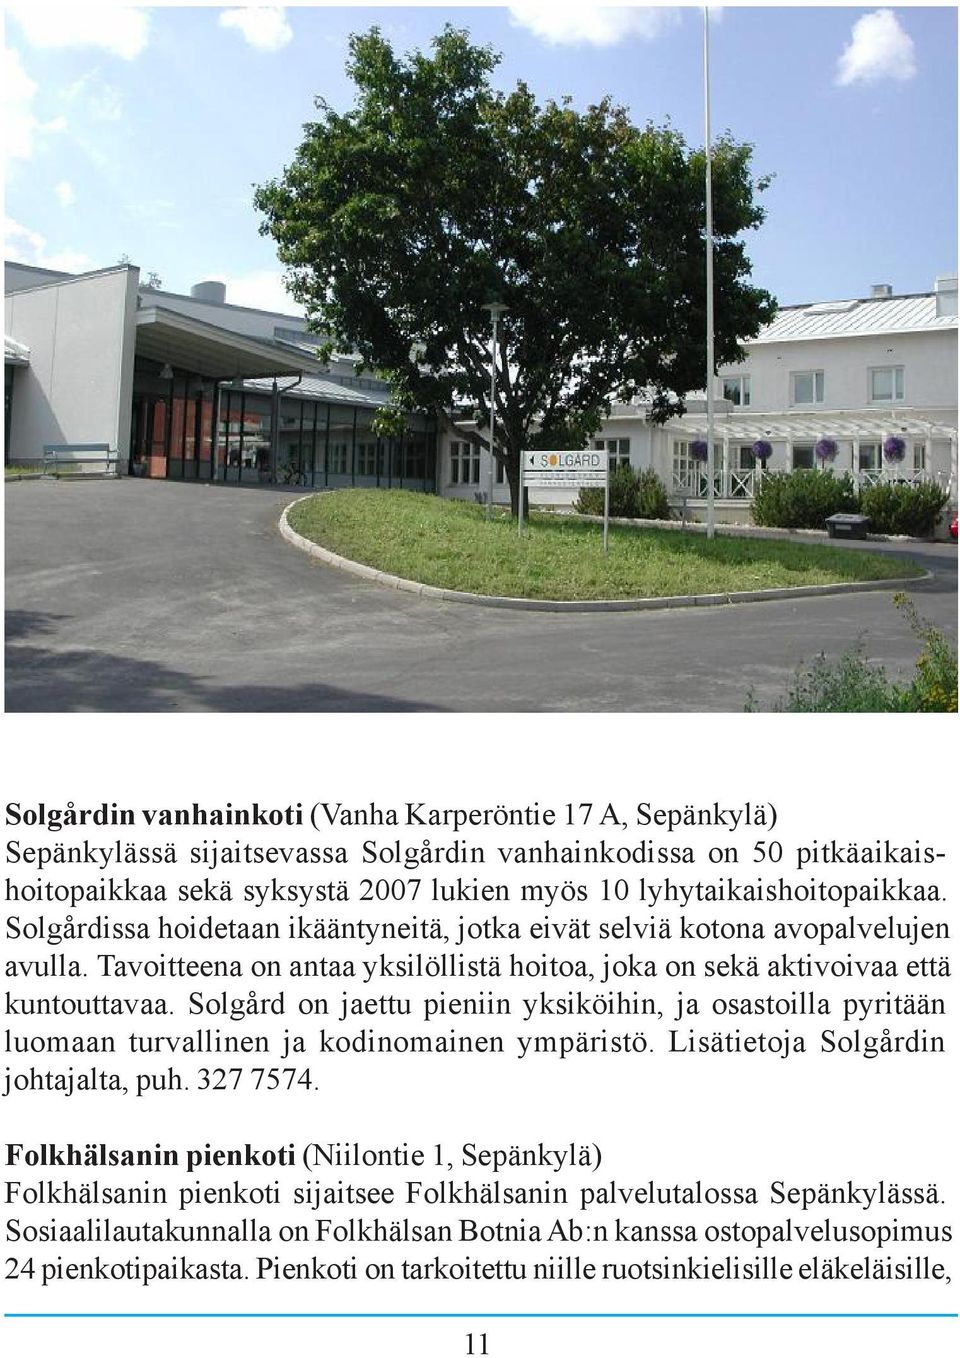 Solgård on jaettu pieniin yksiköihin, ja osastoilla pyritään luomaan turvallinen ja kodinomainen ympäristö. Lisätietoja Solgårdin johtajalta, puh. 327 7574.